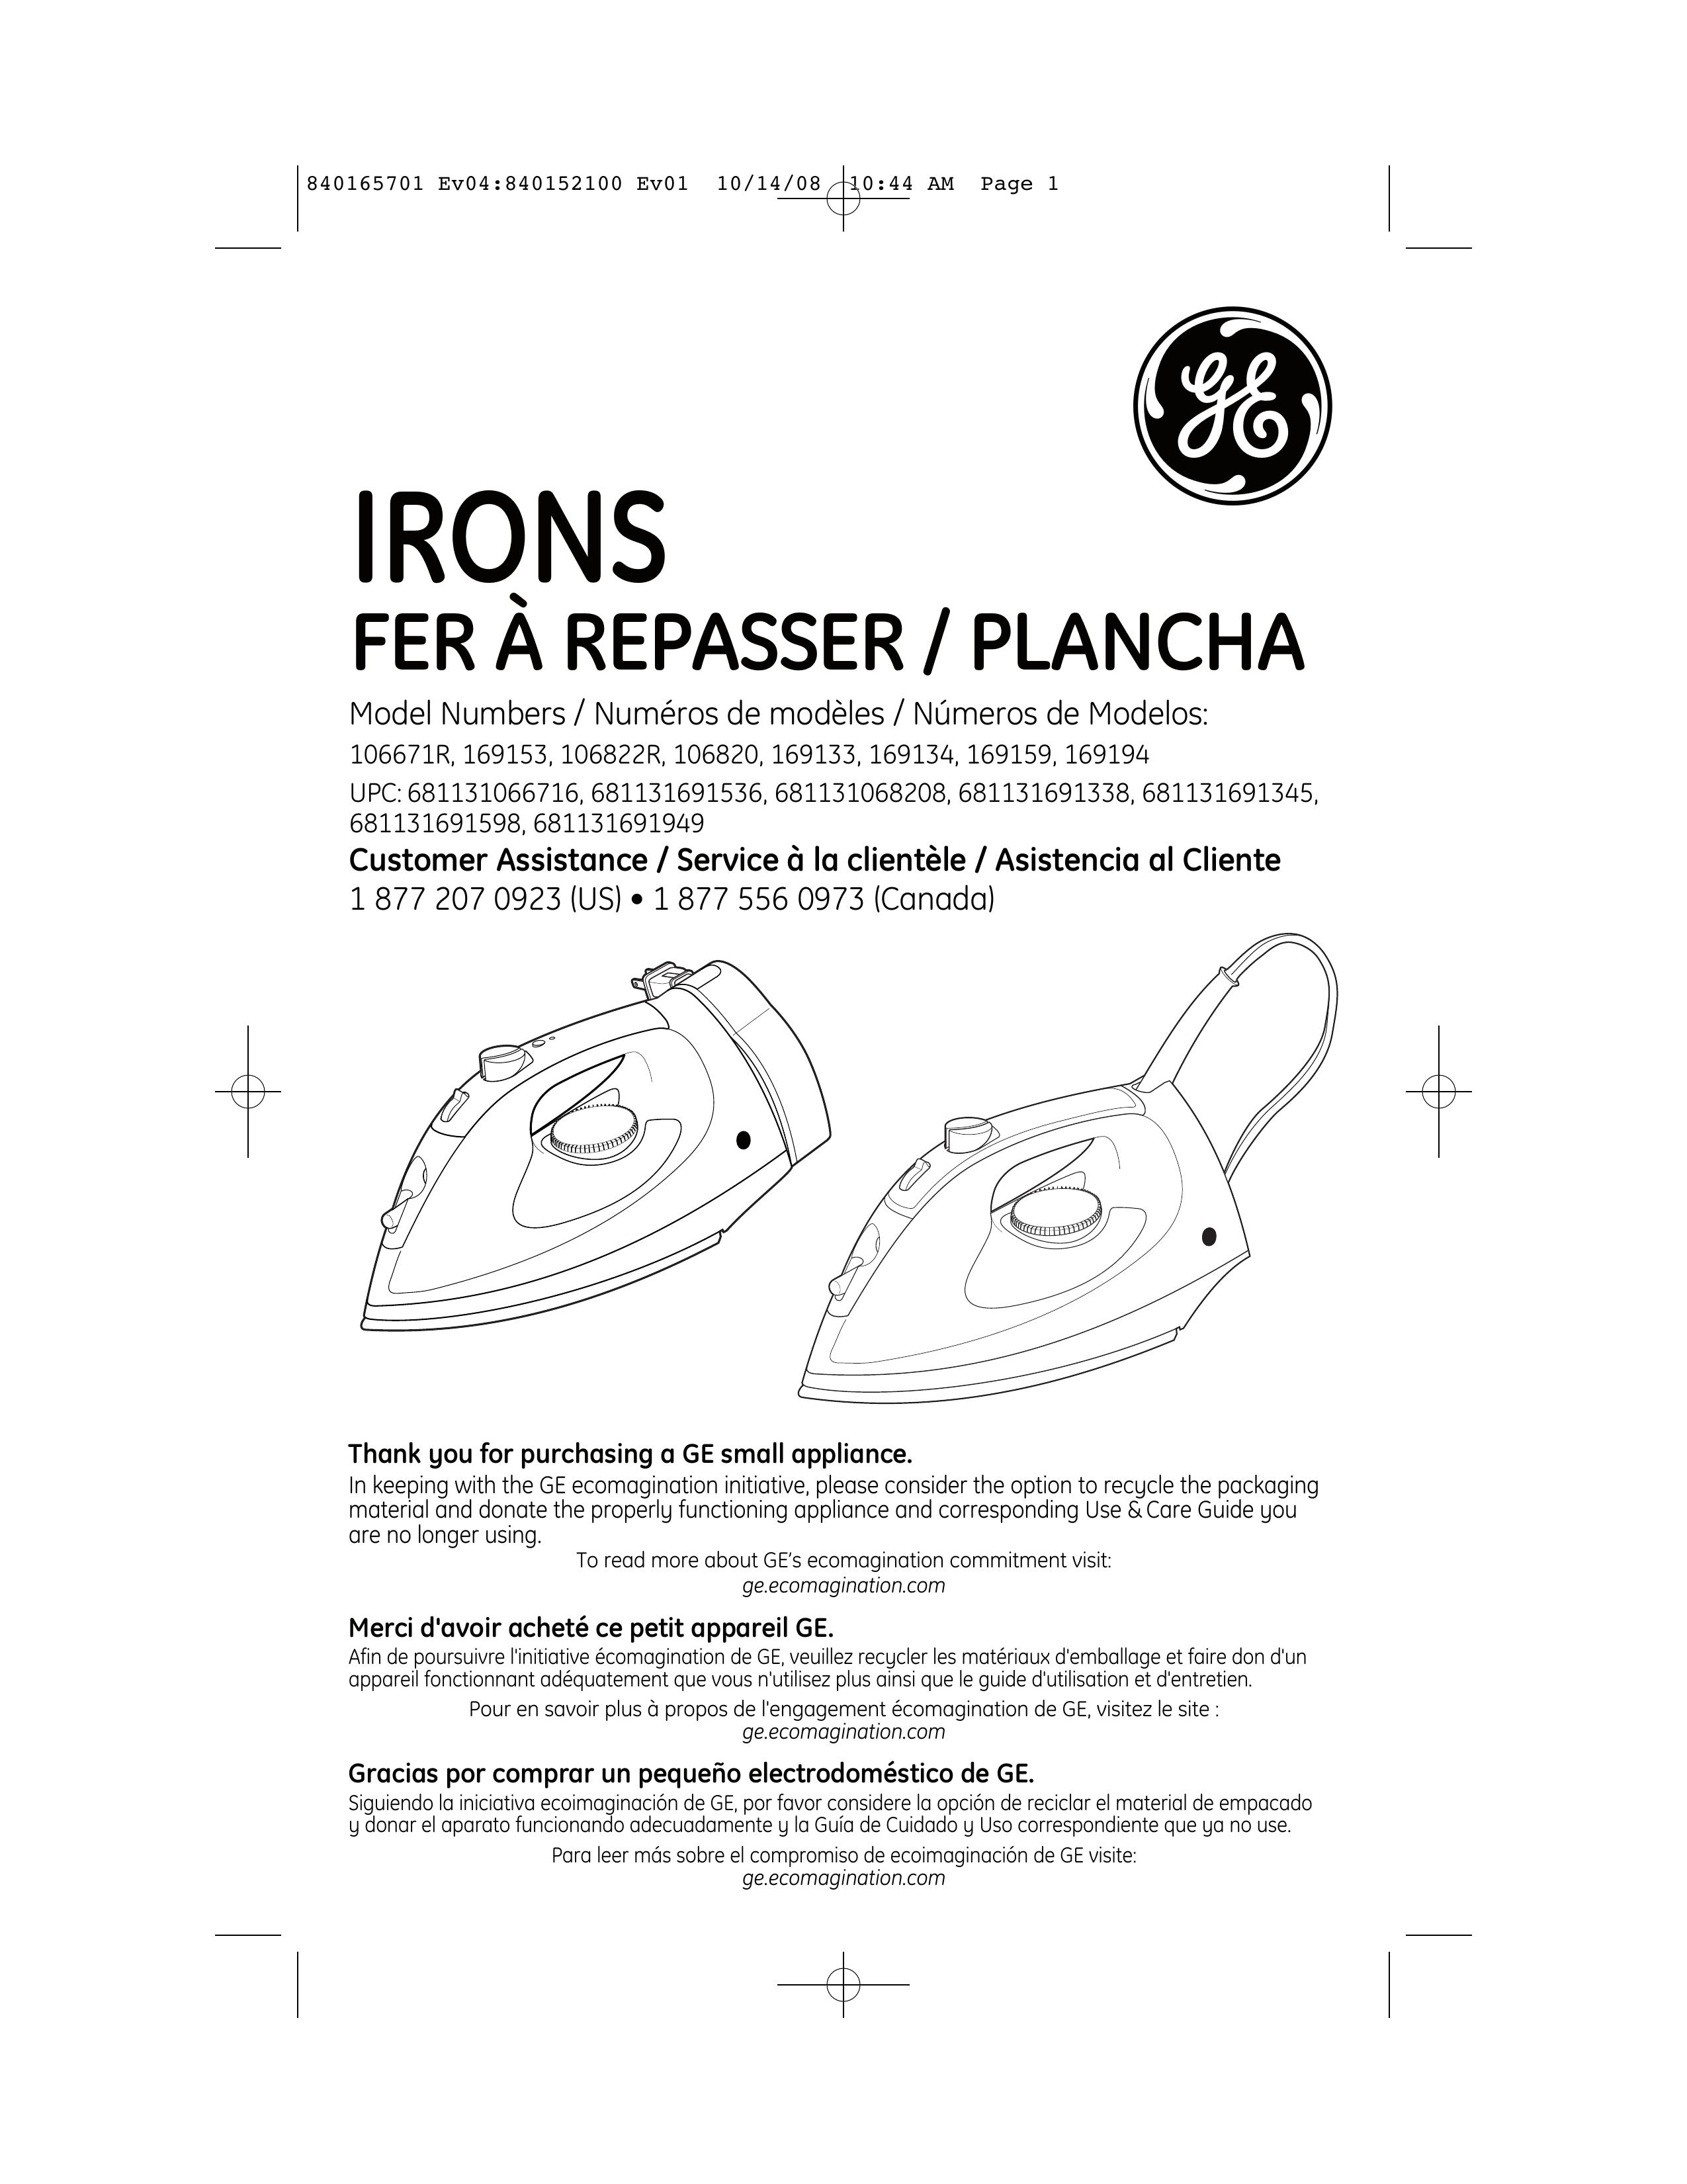 GE 681131066716 Iron User Manual